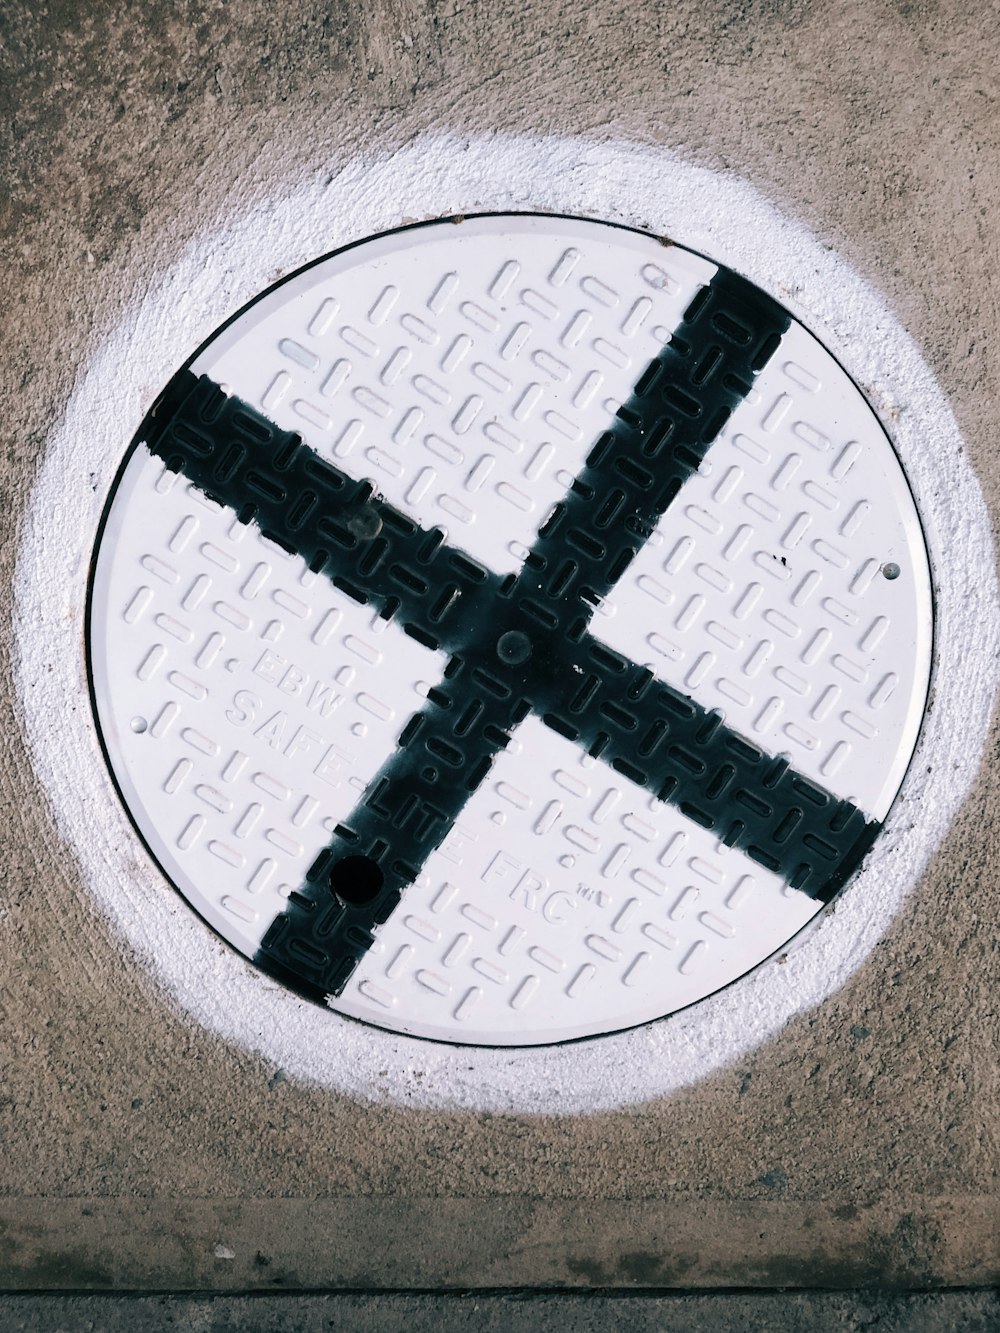 close-up photo of manhole